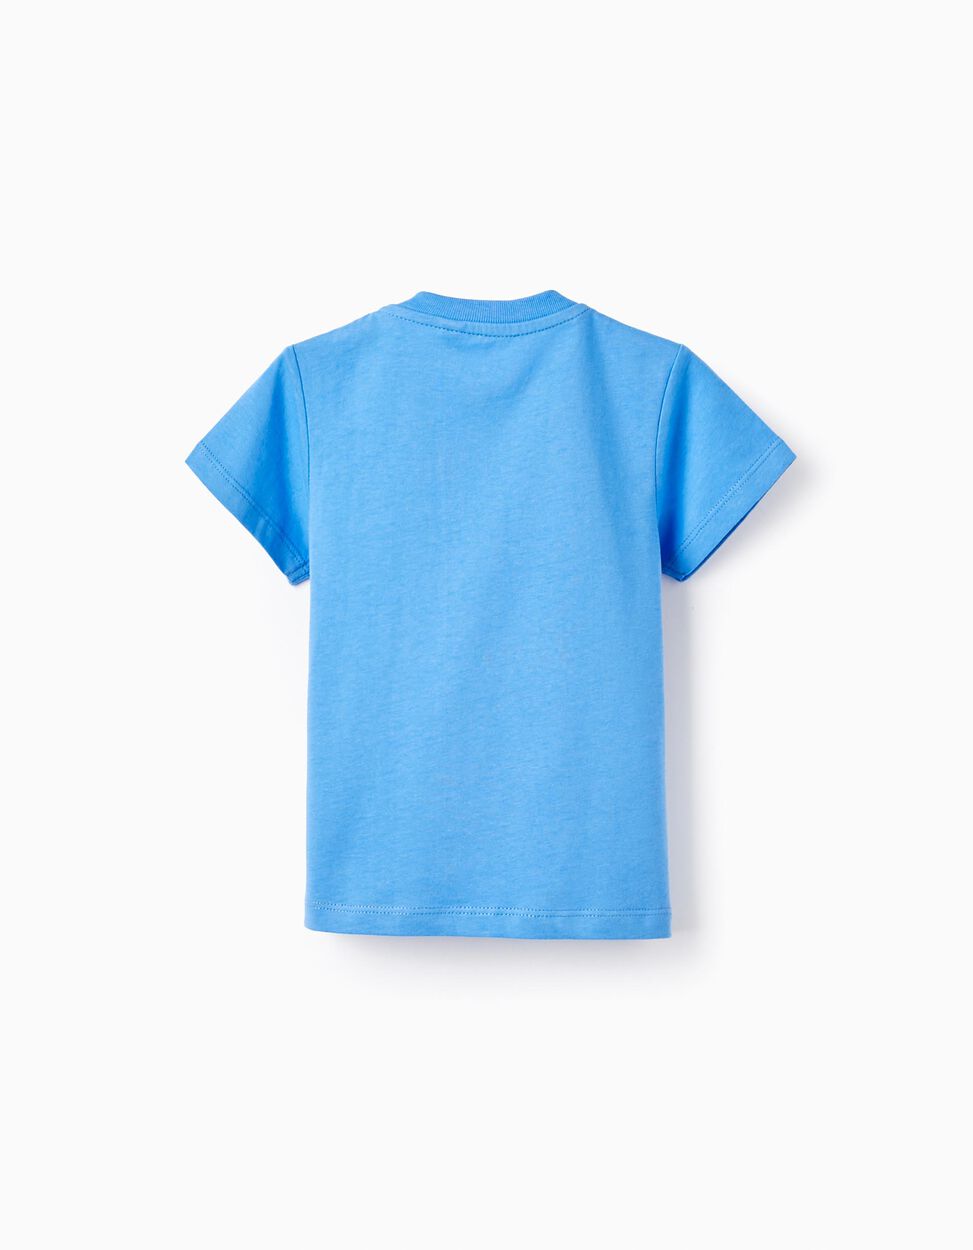 Comprar Online T-shirt de Algodão com Estampado para Bebé Menino 'Sel-Fish', Azul